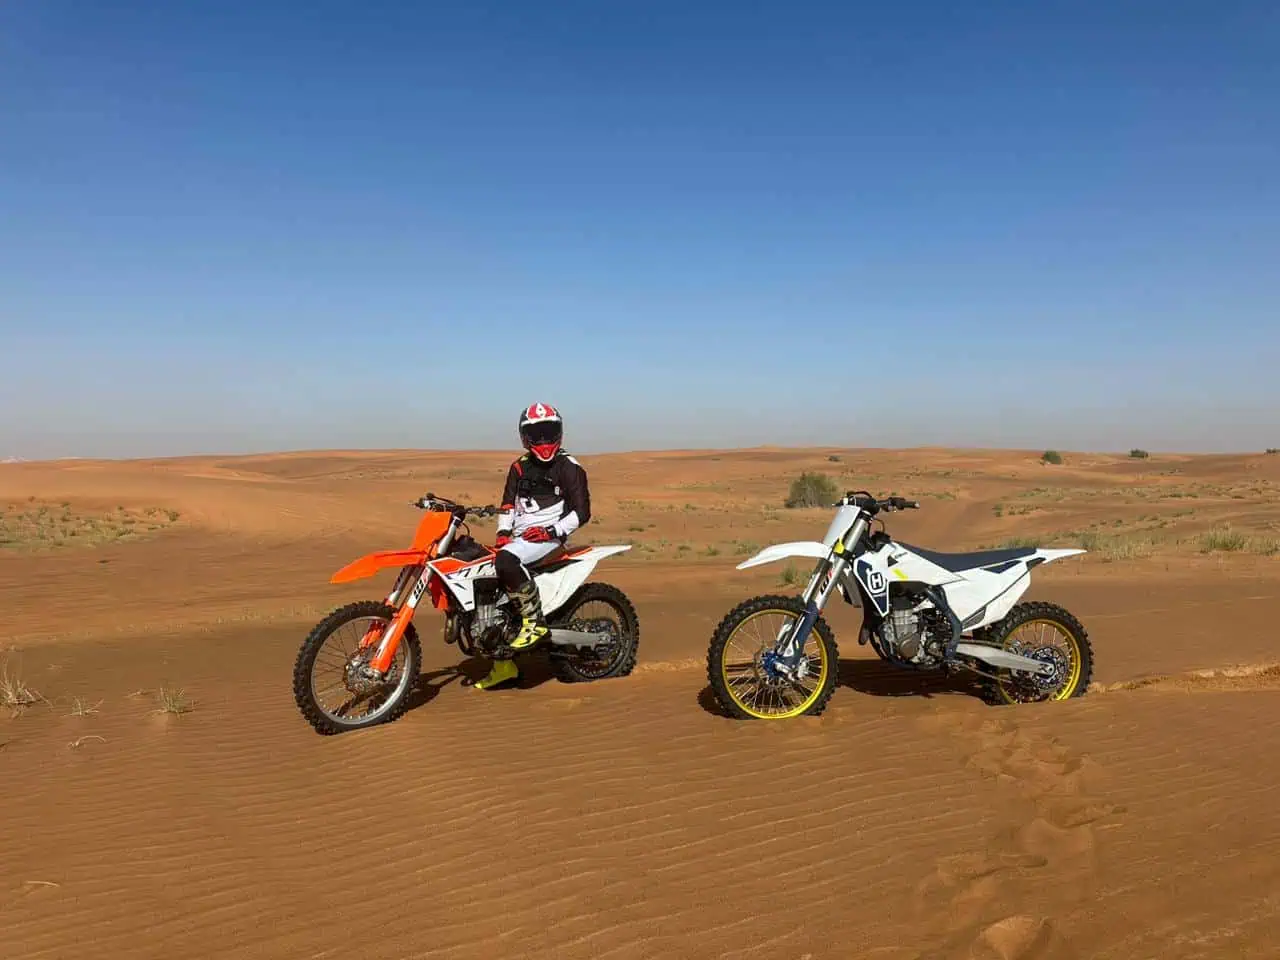 Desert Dirt Bikes VS Traditional Motorcycles